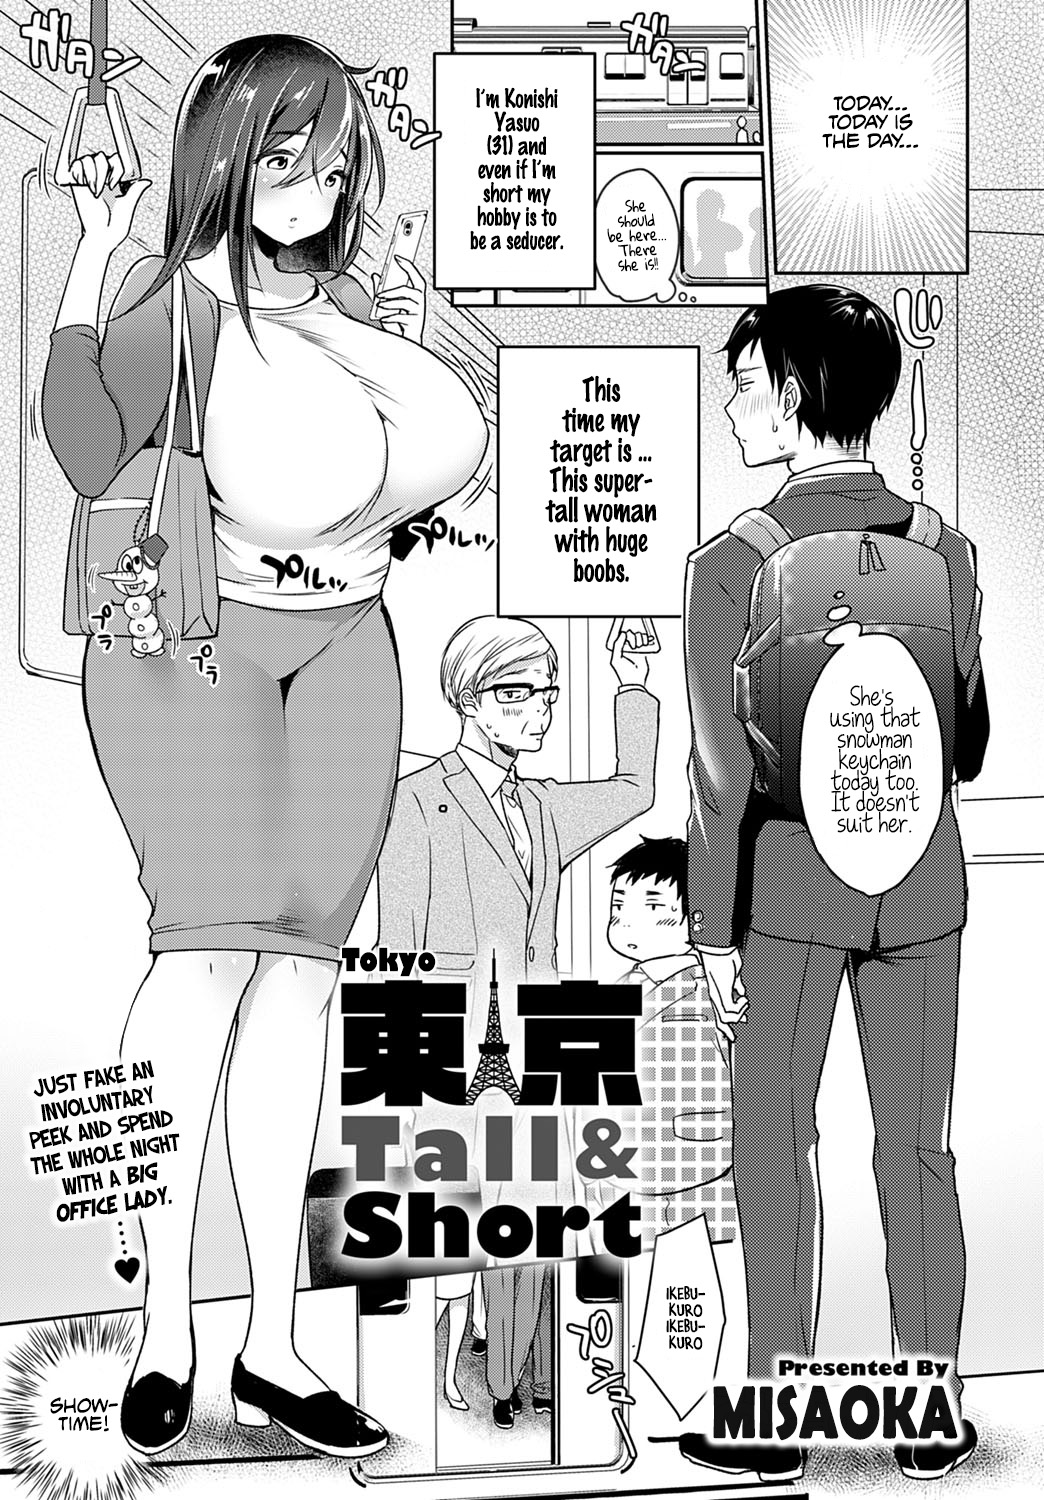 Tall woman porn comics